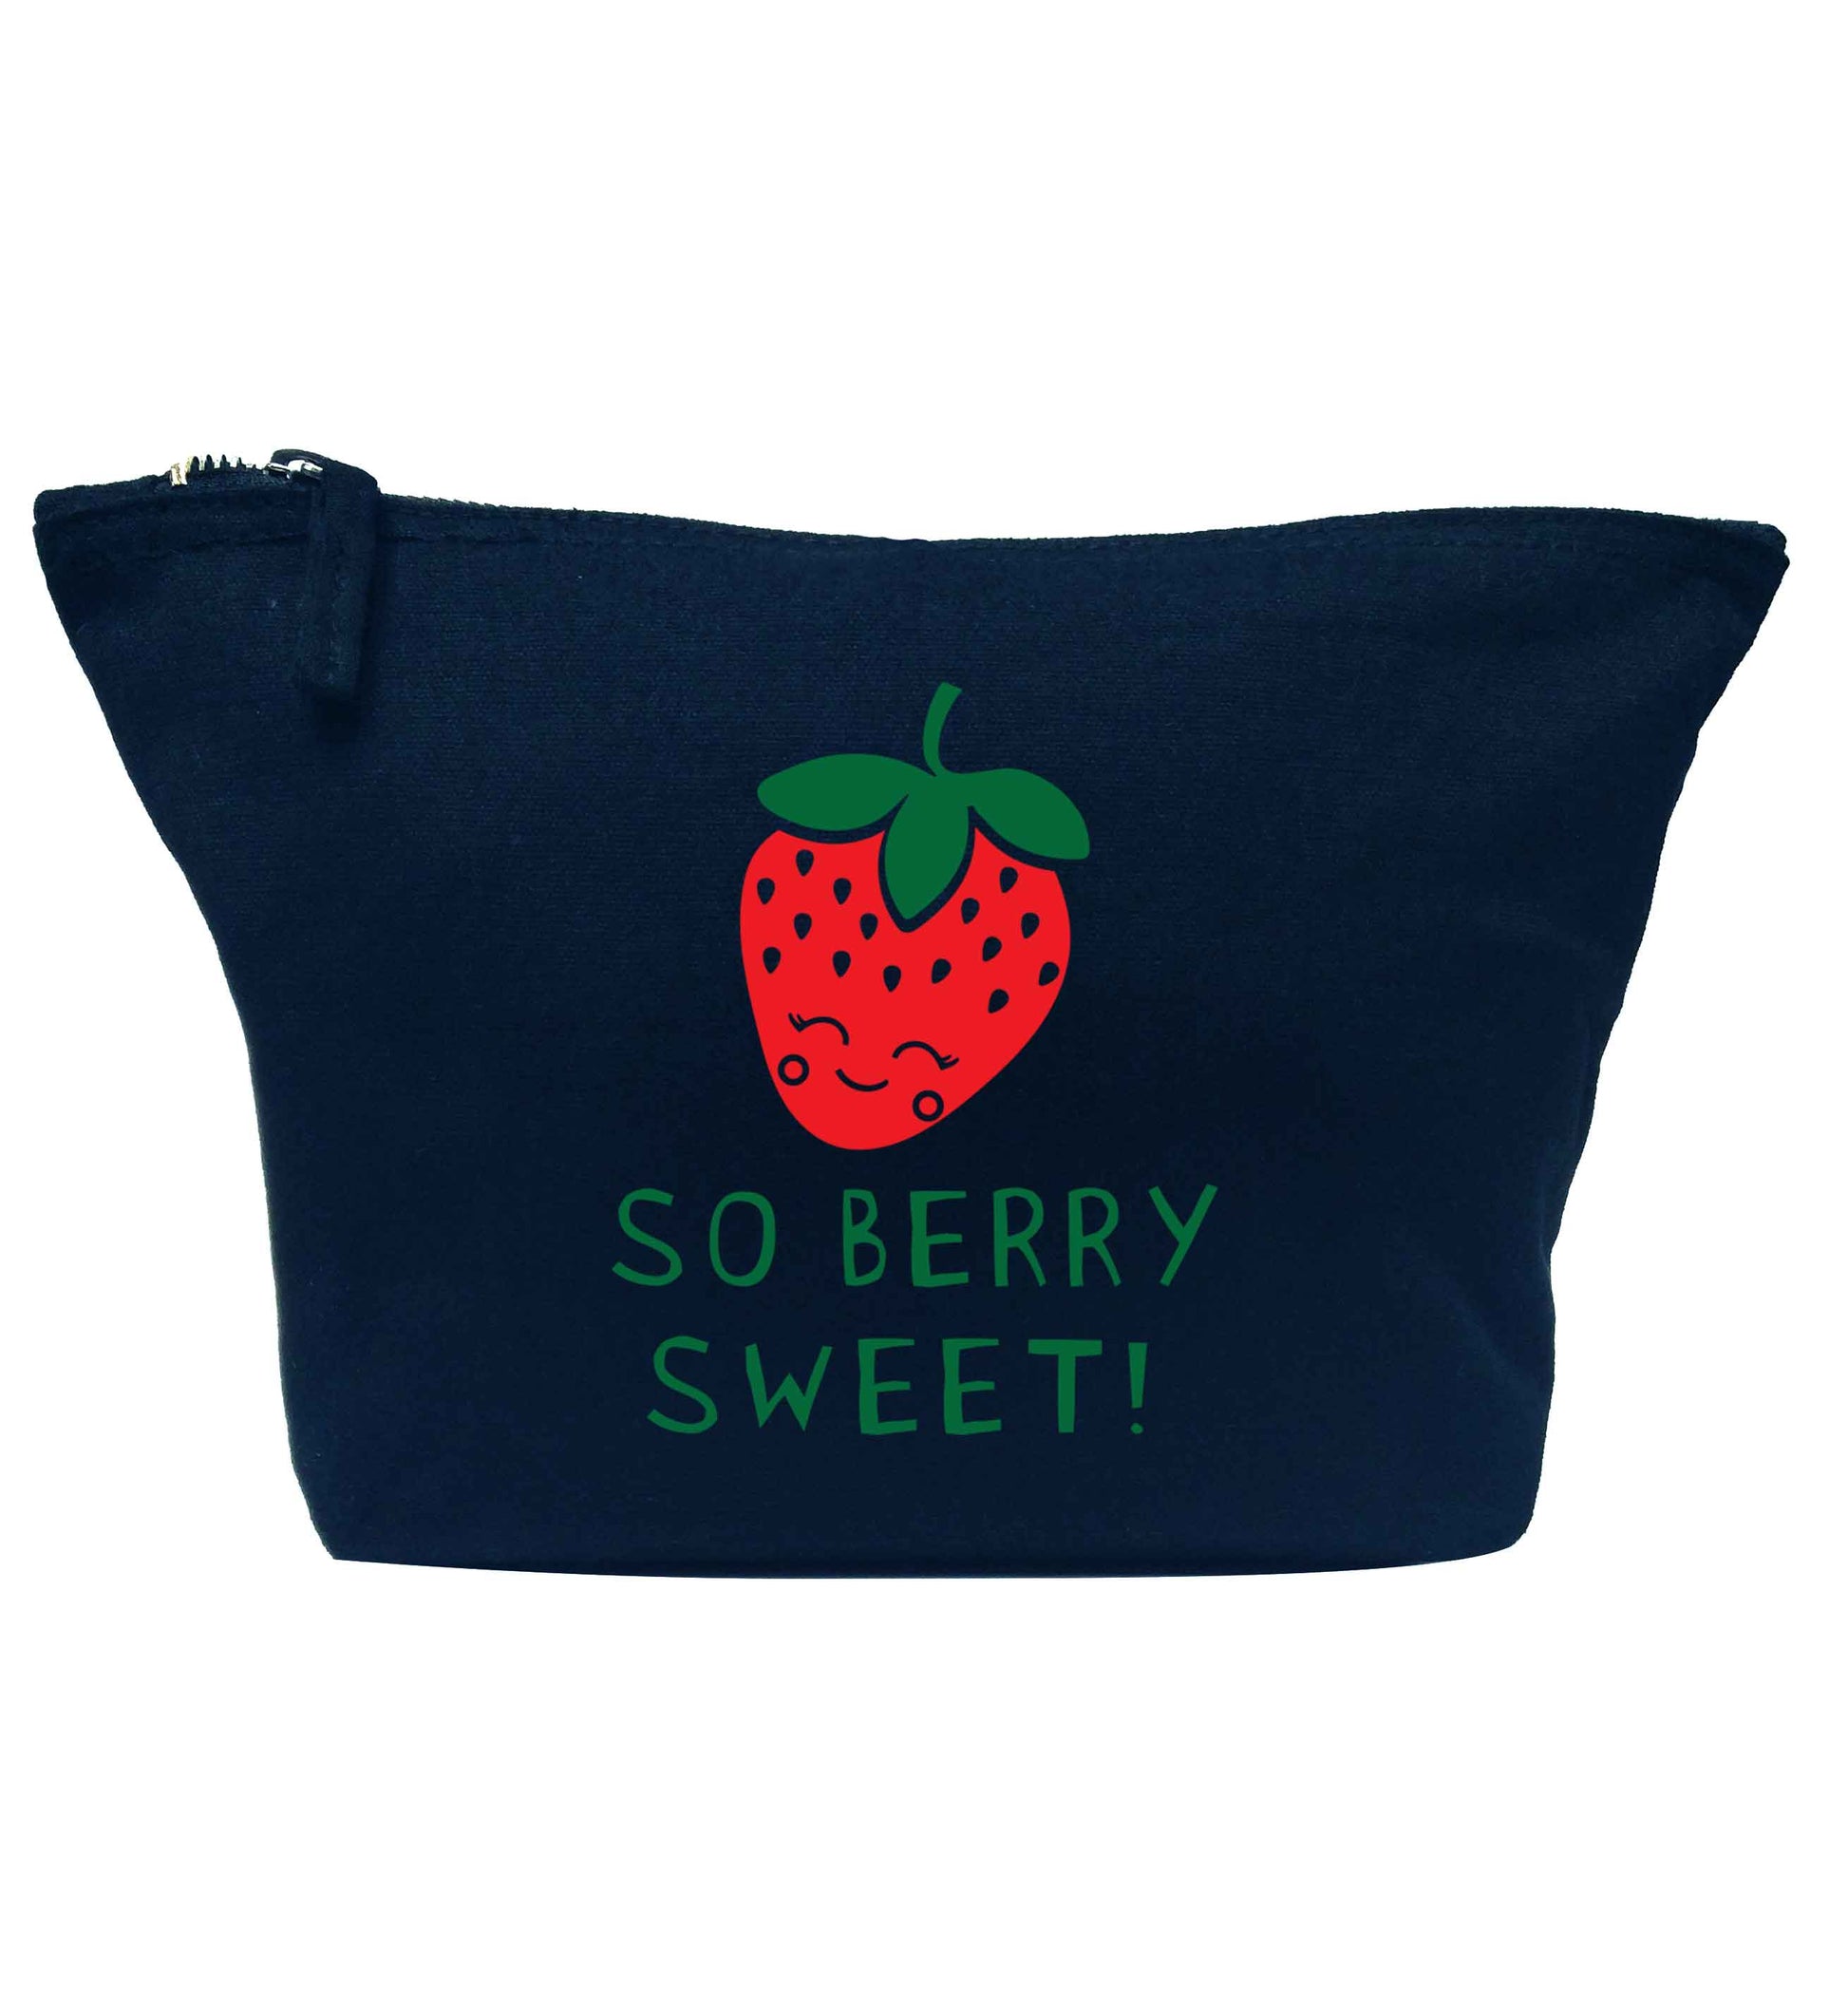 So berry sweet navy makeup bag